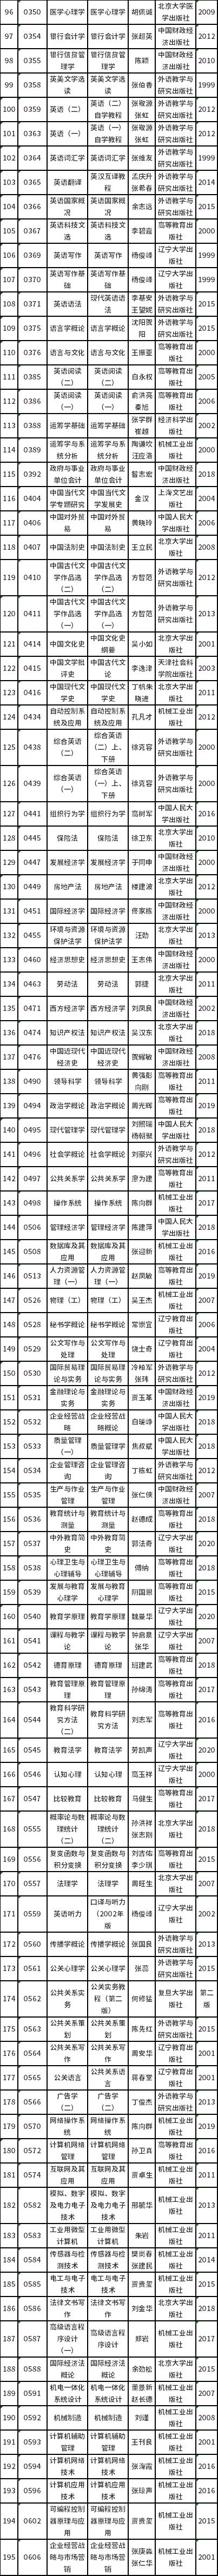 天津市2022年高等教育自学考试课程使用教材表